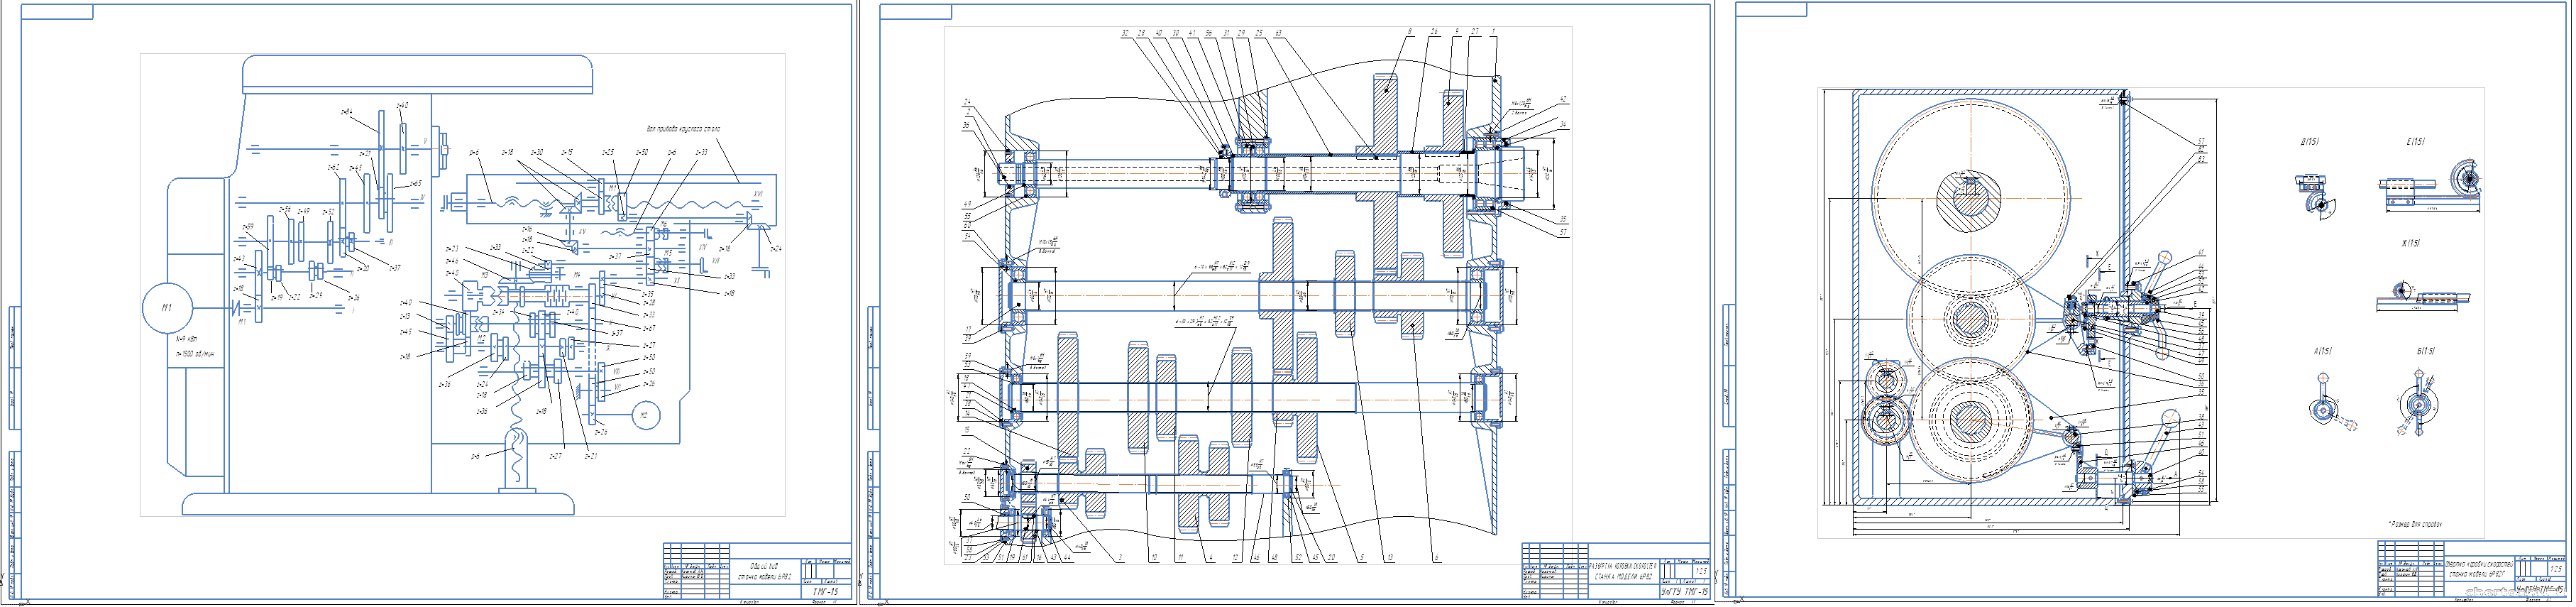 Курсовой проект - Проектирование привода главного движения станка 6Р82Г